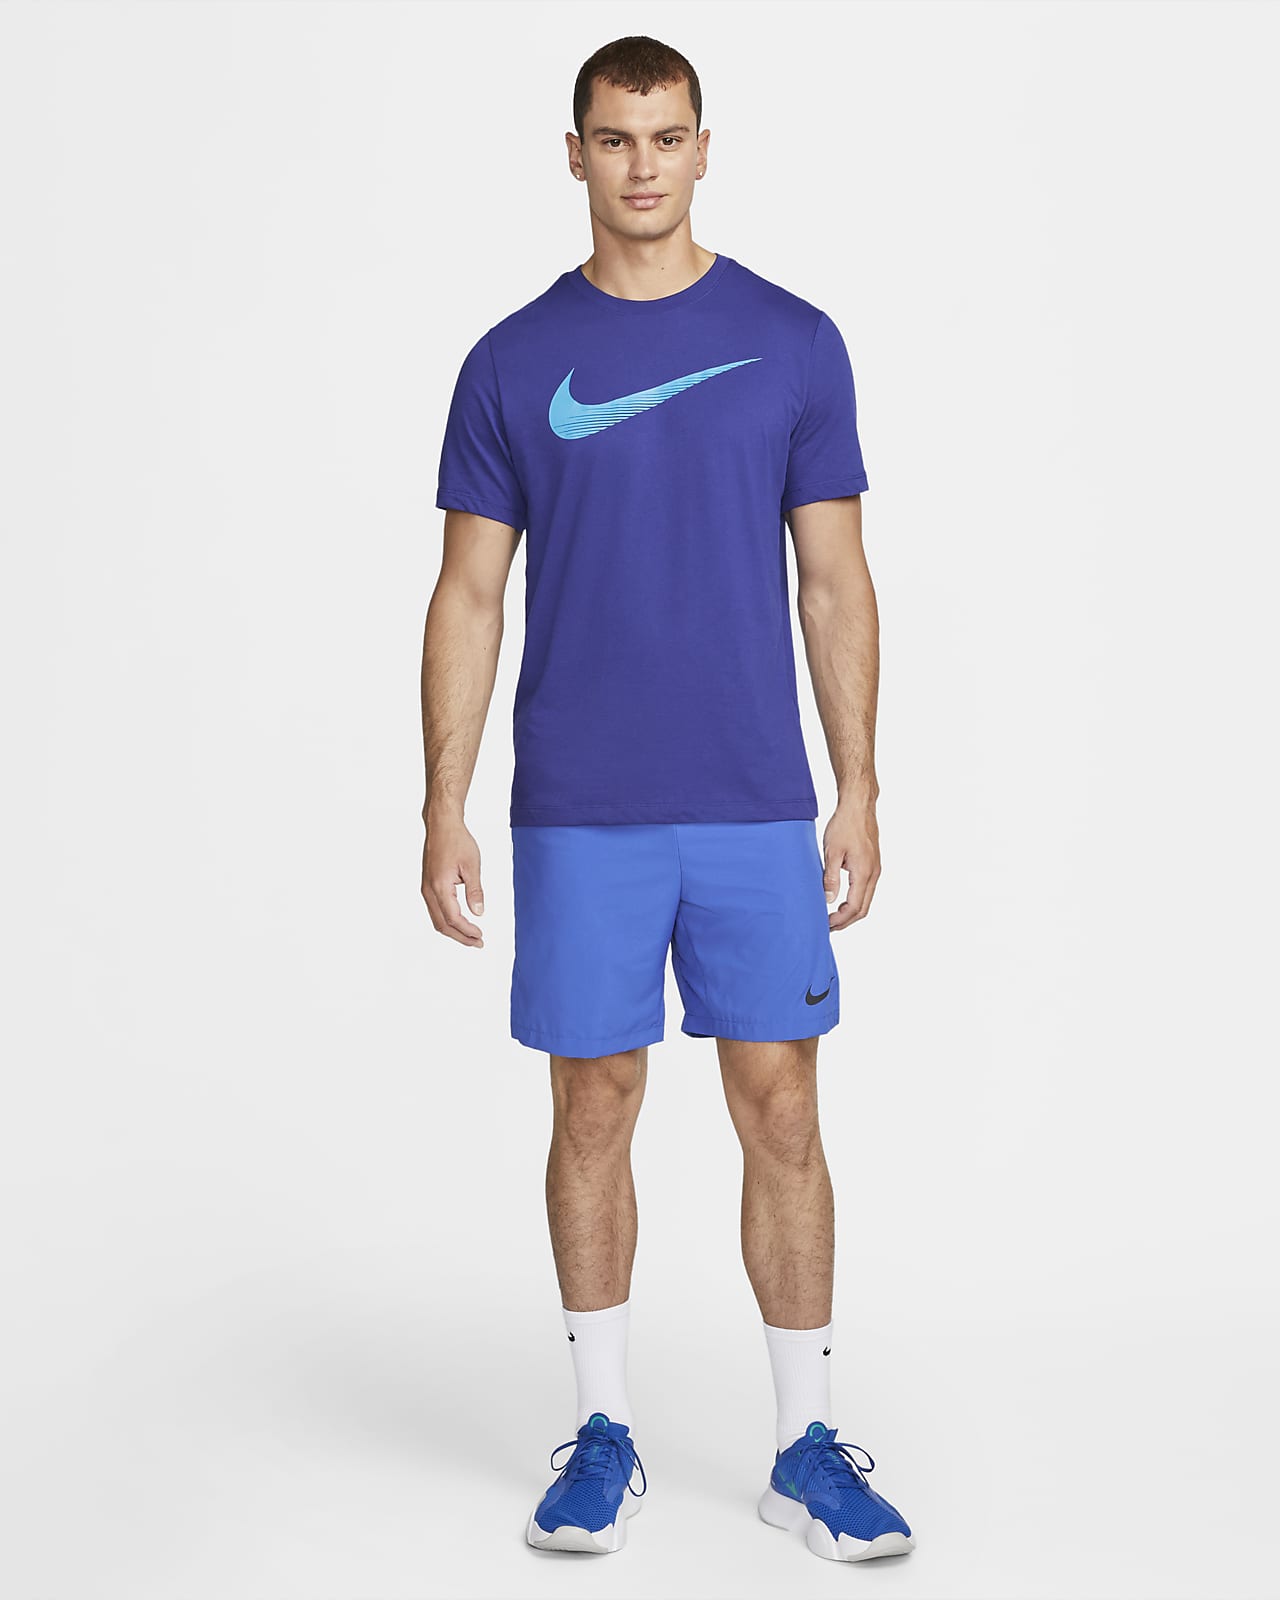 Nike Men's Swoosh T-Shirt. Nike.com